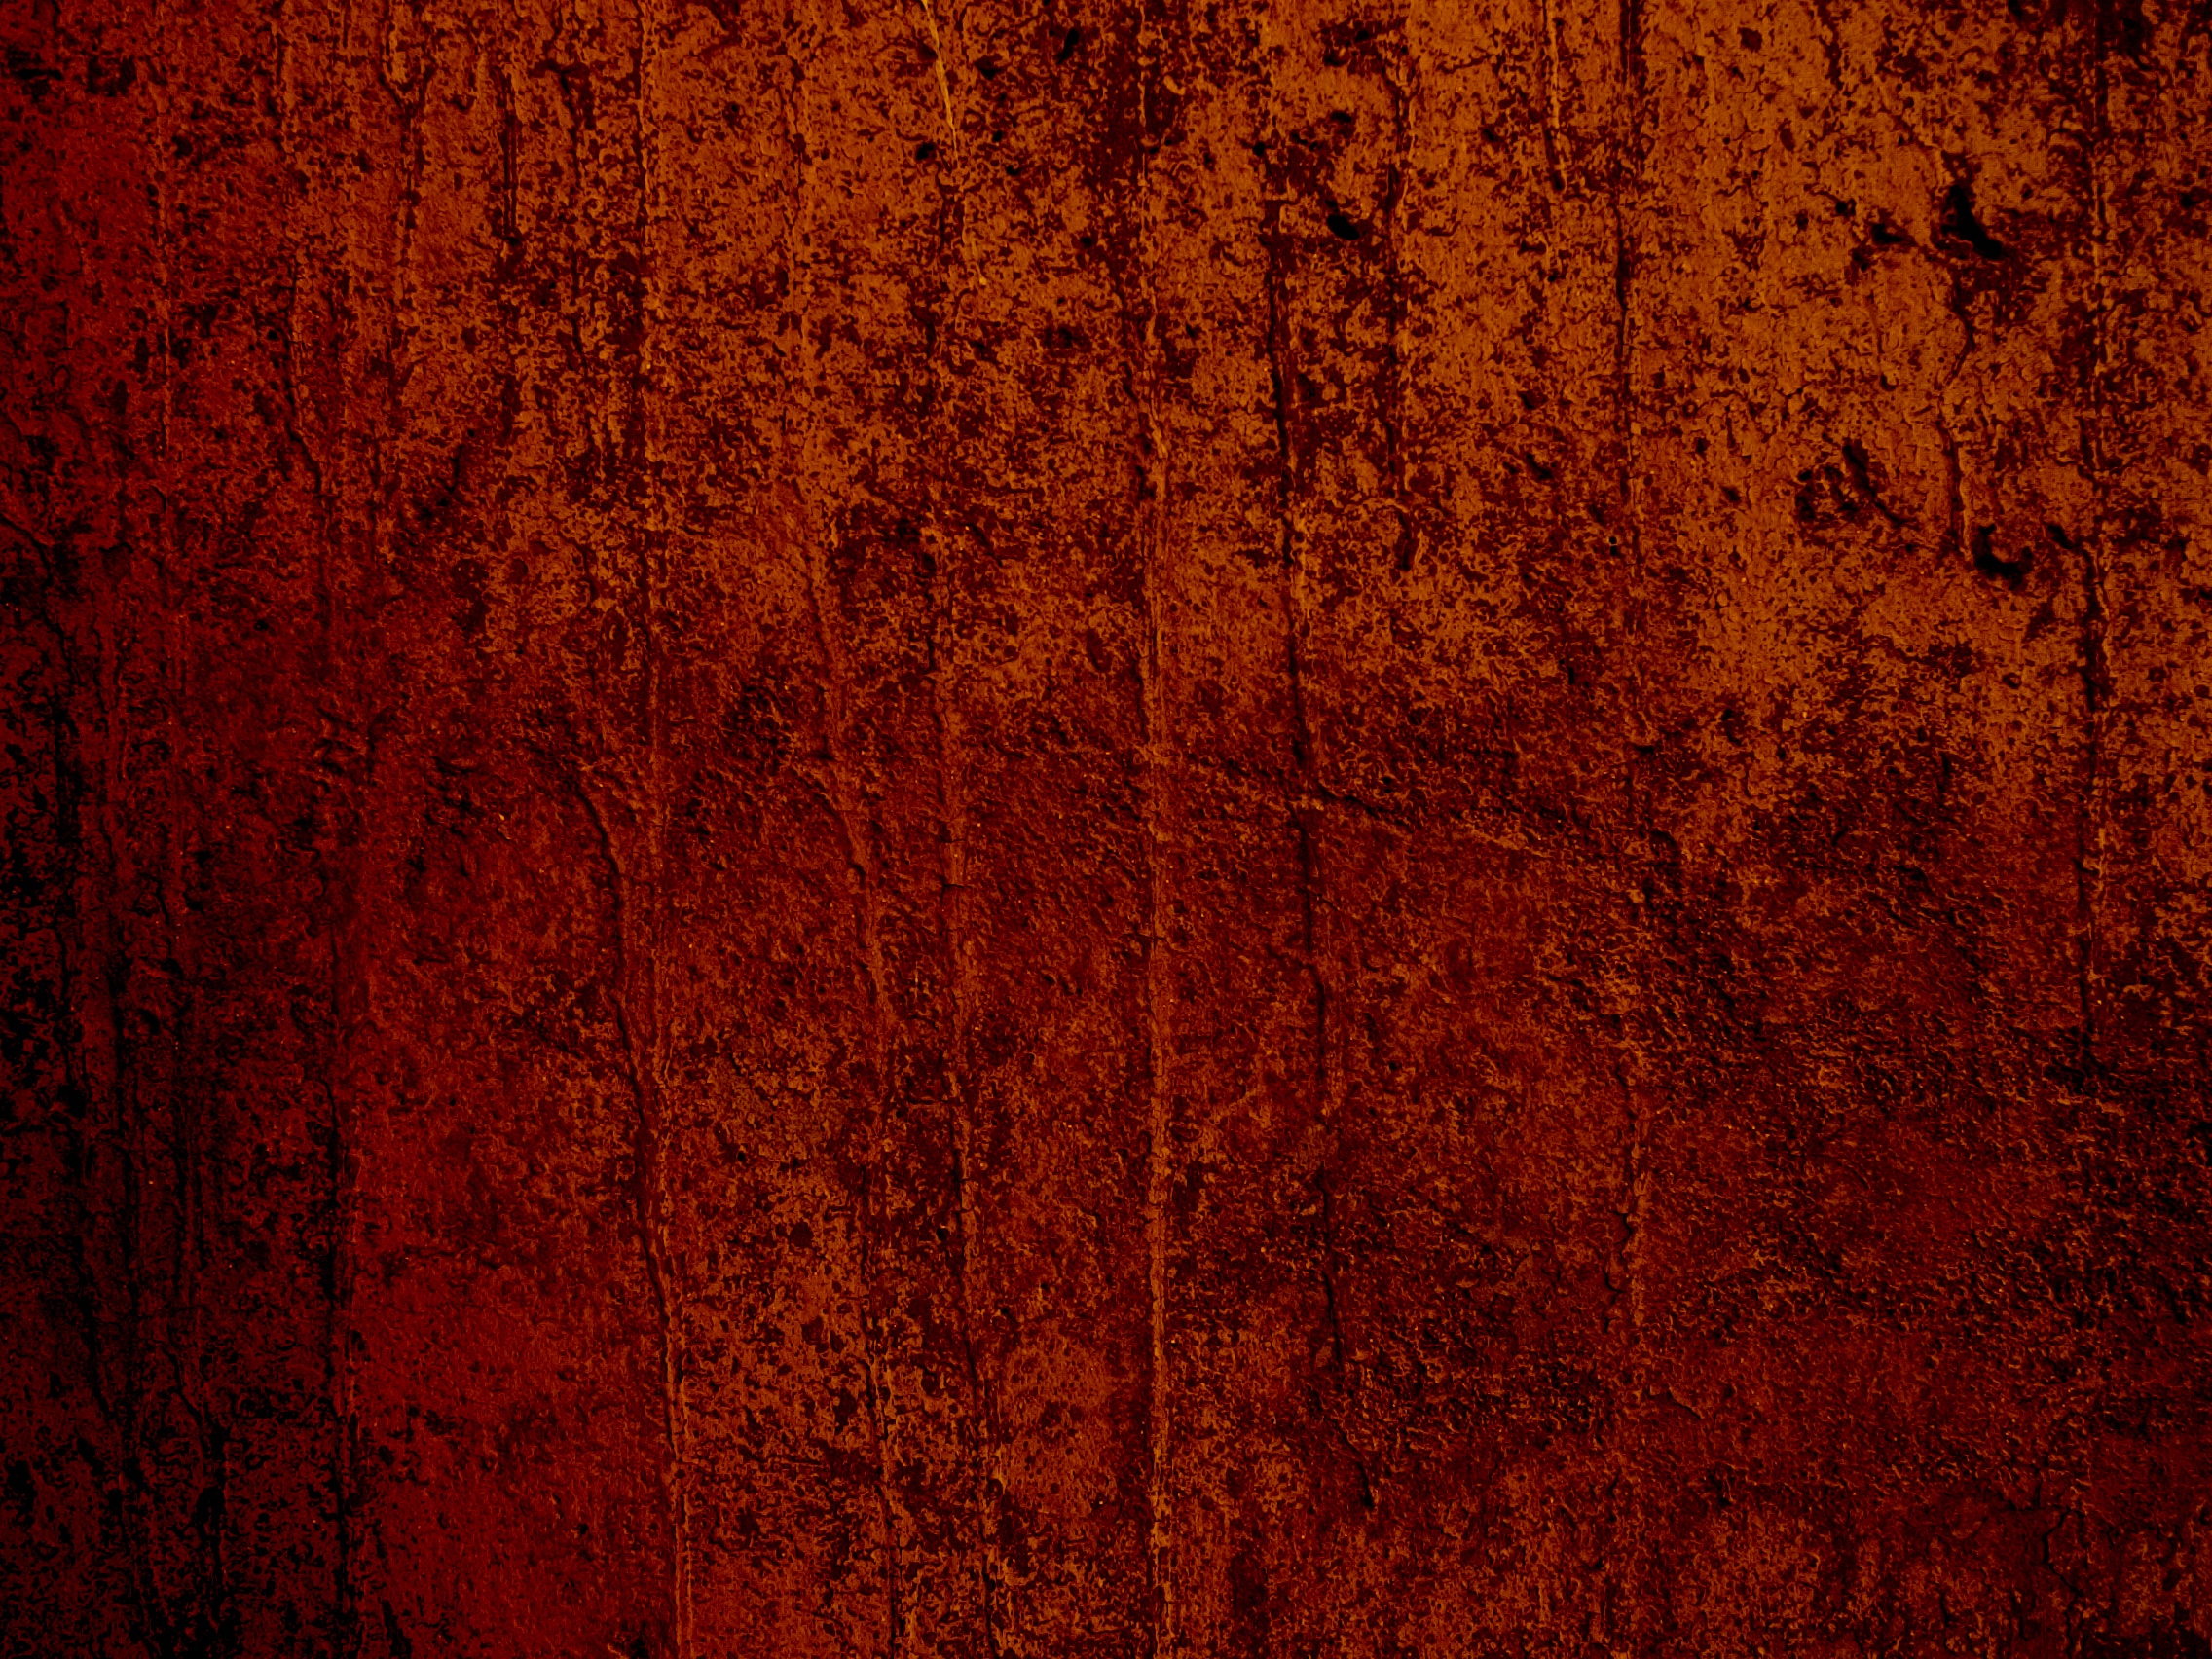 papel tapiz con textura naranja,rojo,naranja,marrón,madera,mancha de madera